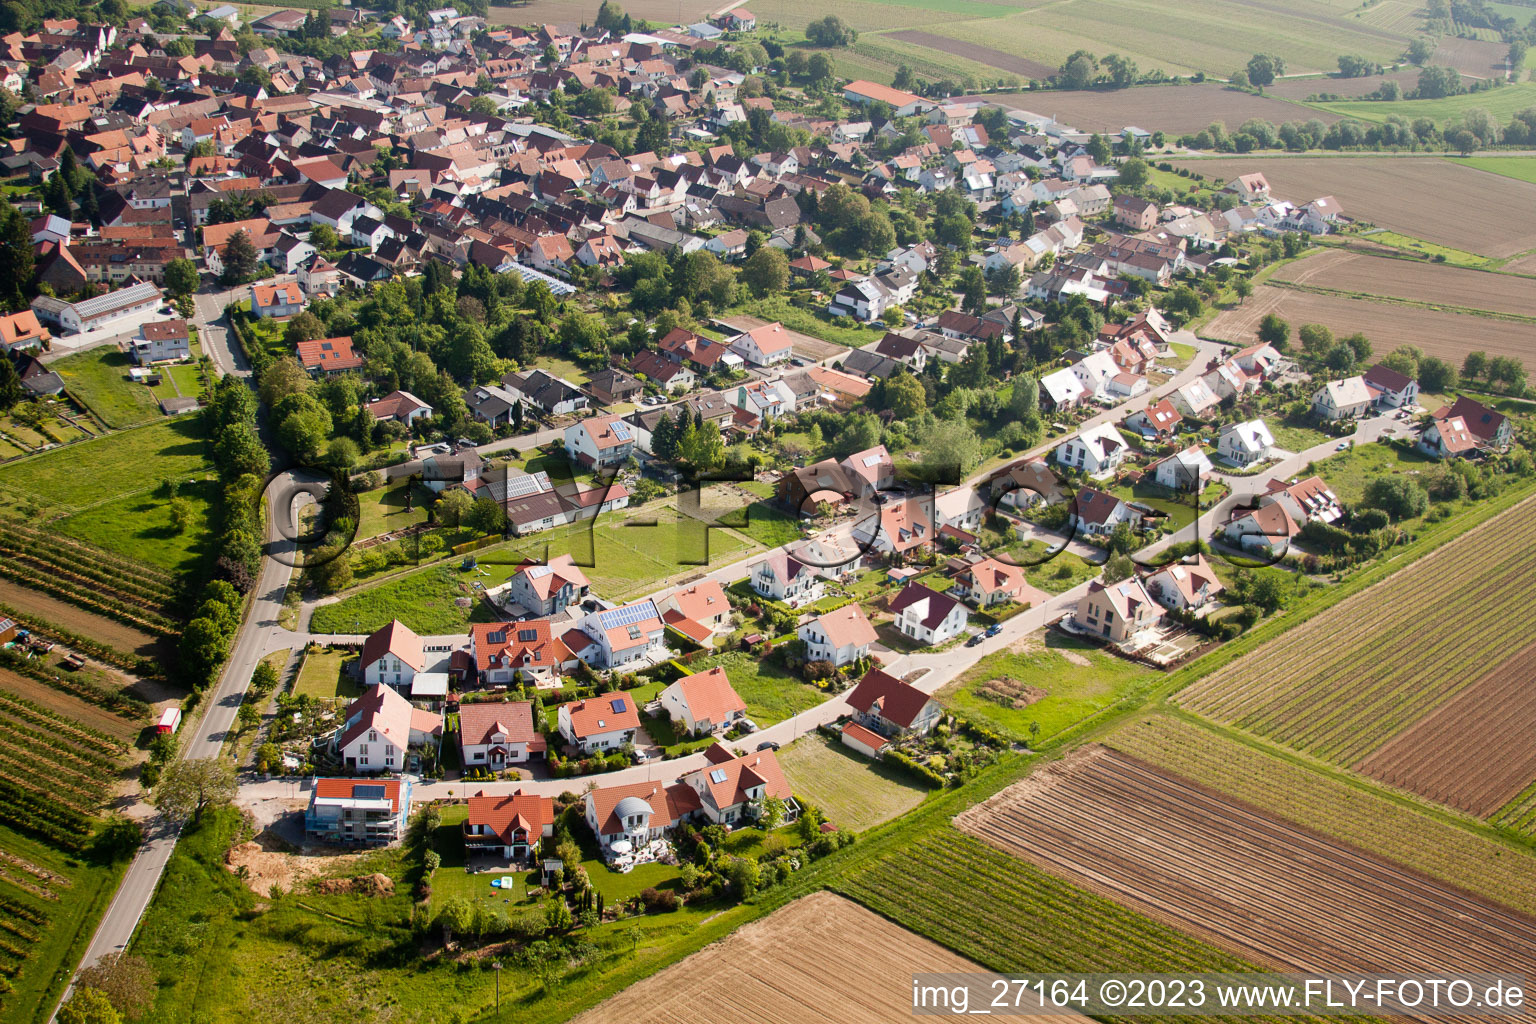 Ortsteil Mörzheim in Landau in der Pfalz im Bundesland Rheinland-Pfalz, Deutschland von der Drohne aus gesehen